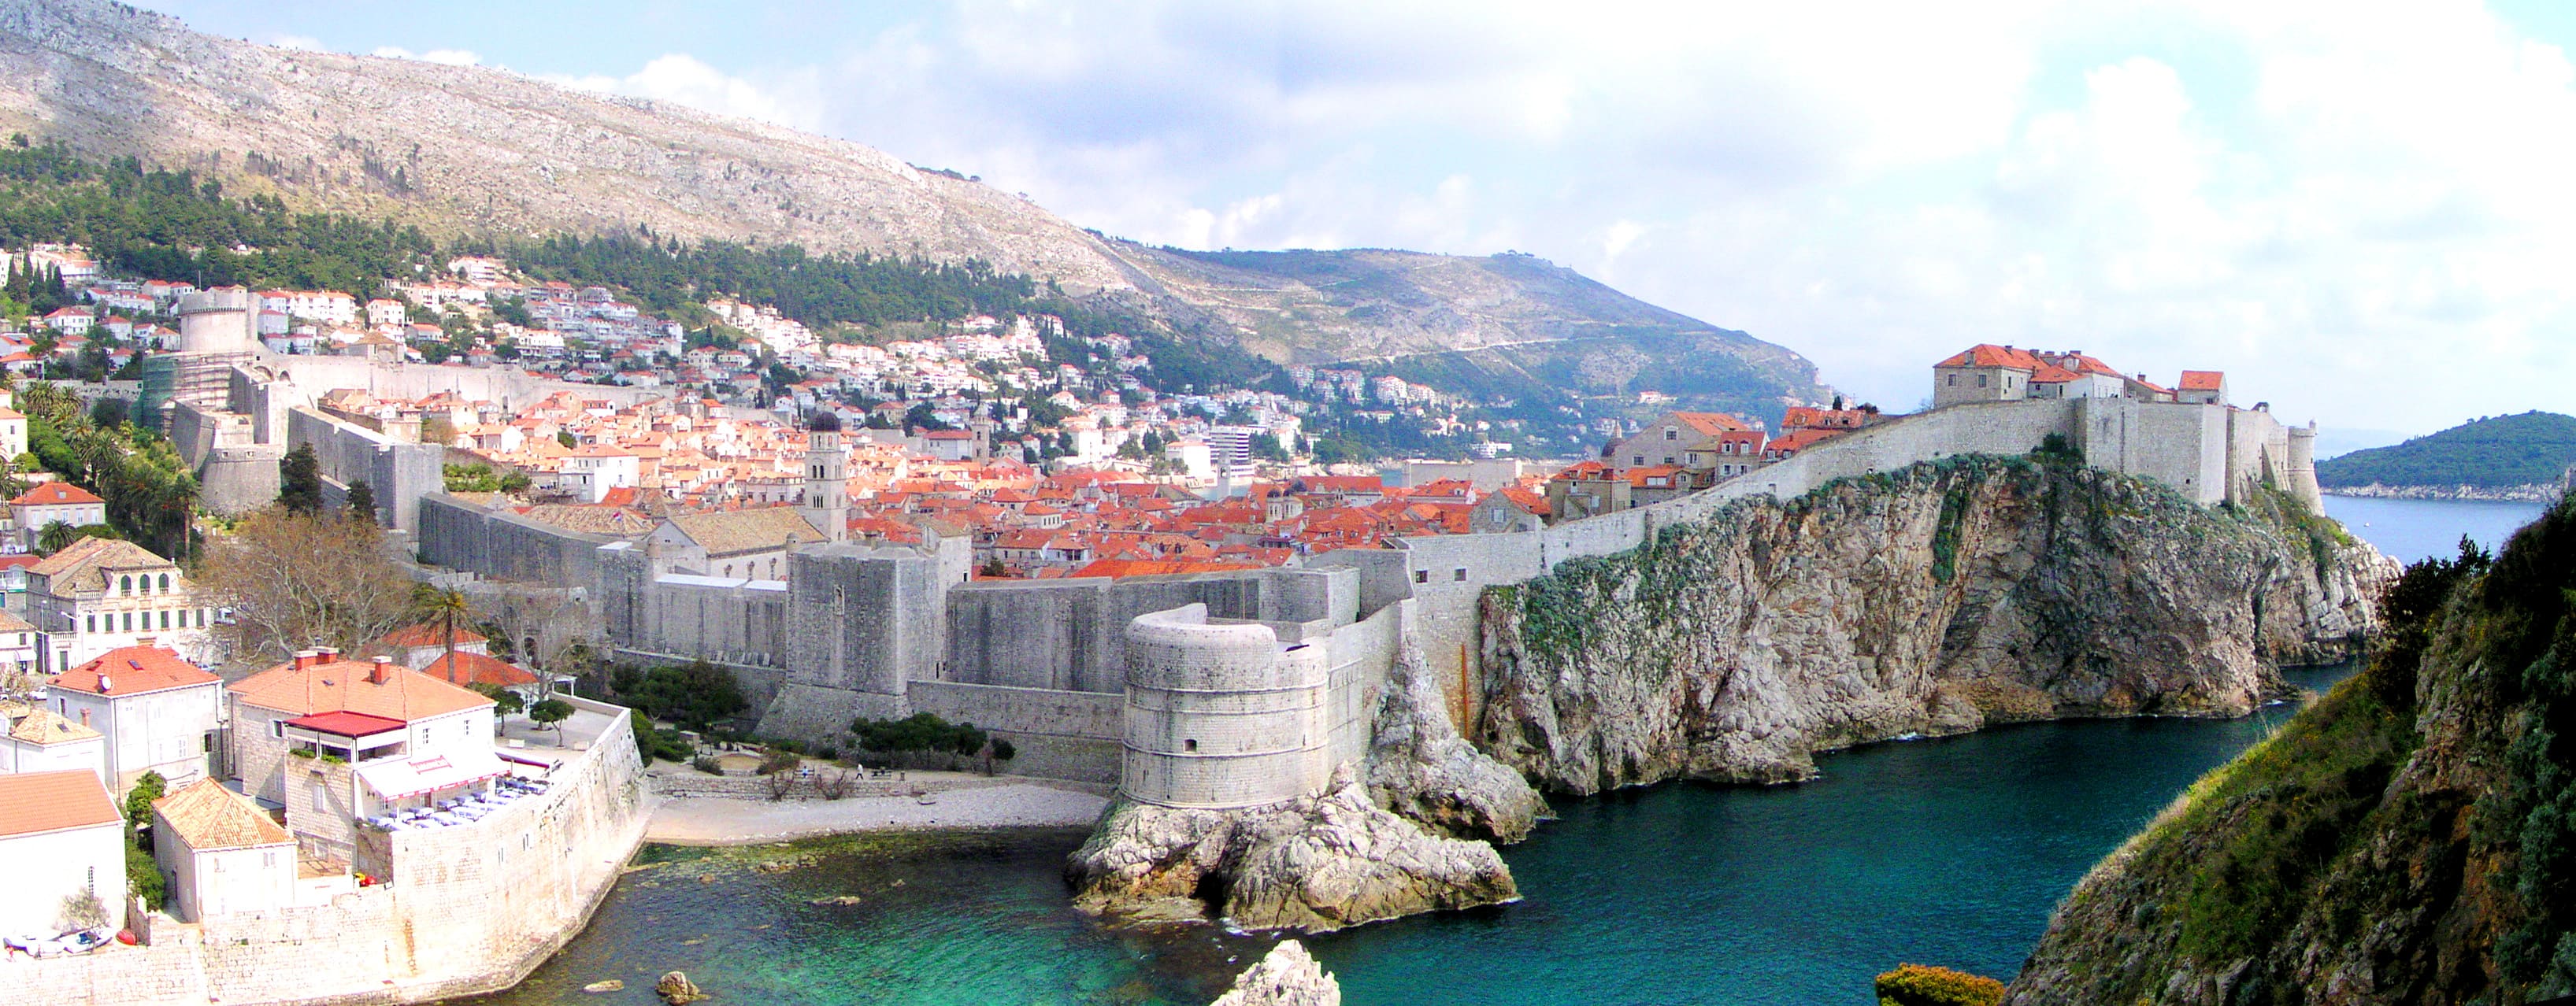 Dubrovnik, das frühere Ragusa, an der dalmatinischen Adria-Küste Kroatiens